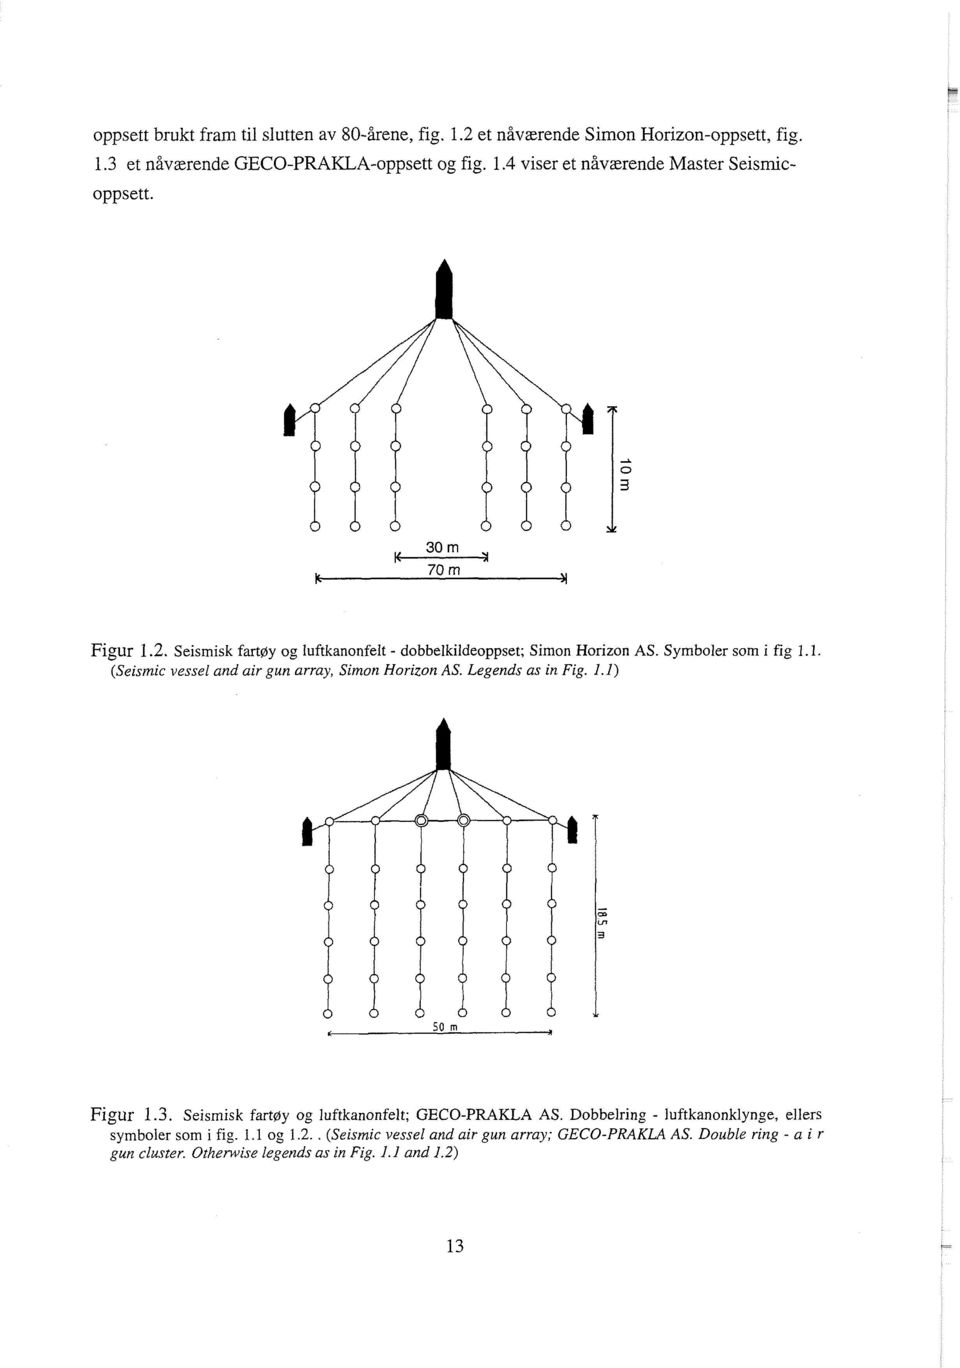 Legends as in Fig. 1.1) Figur 1.3. Seismisk fart~y og luftkanonfelt; GECO-PRAKLA AS. Dobbelring - luftkanonklynge, ellers symboler som i fig. 1.1 og 1.2.